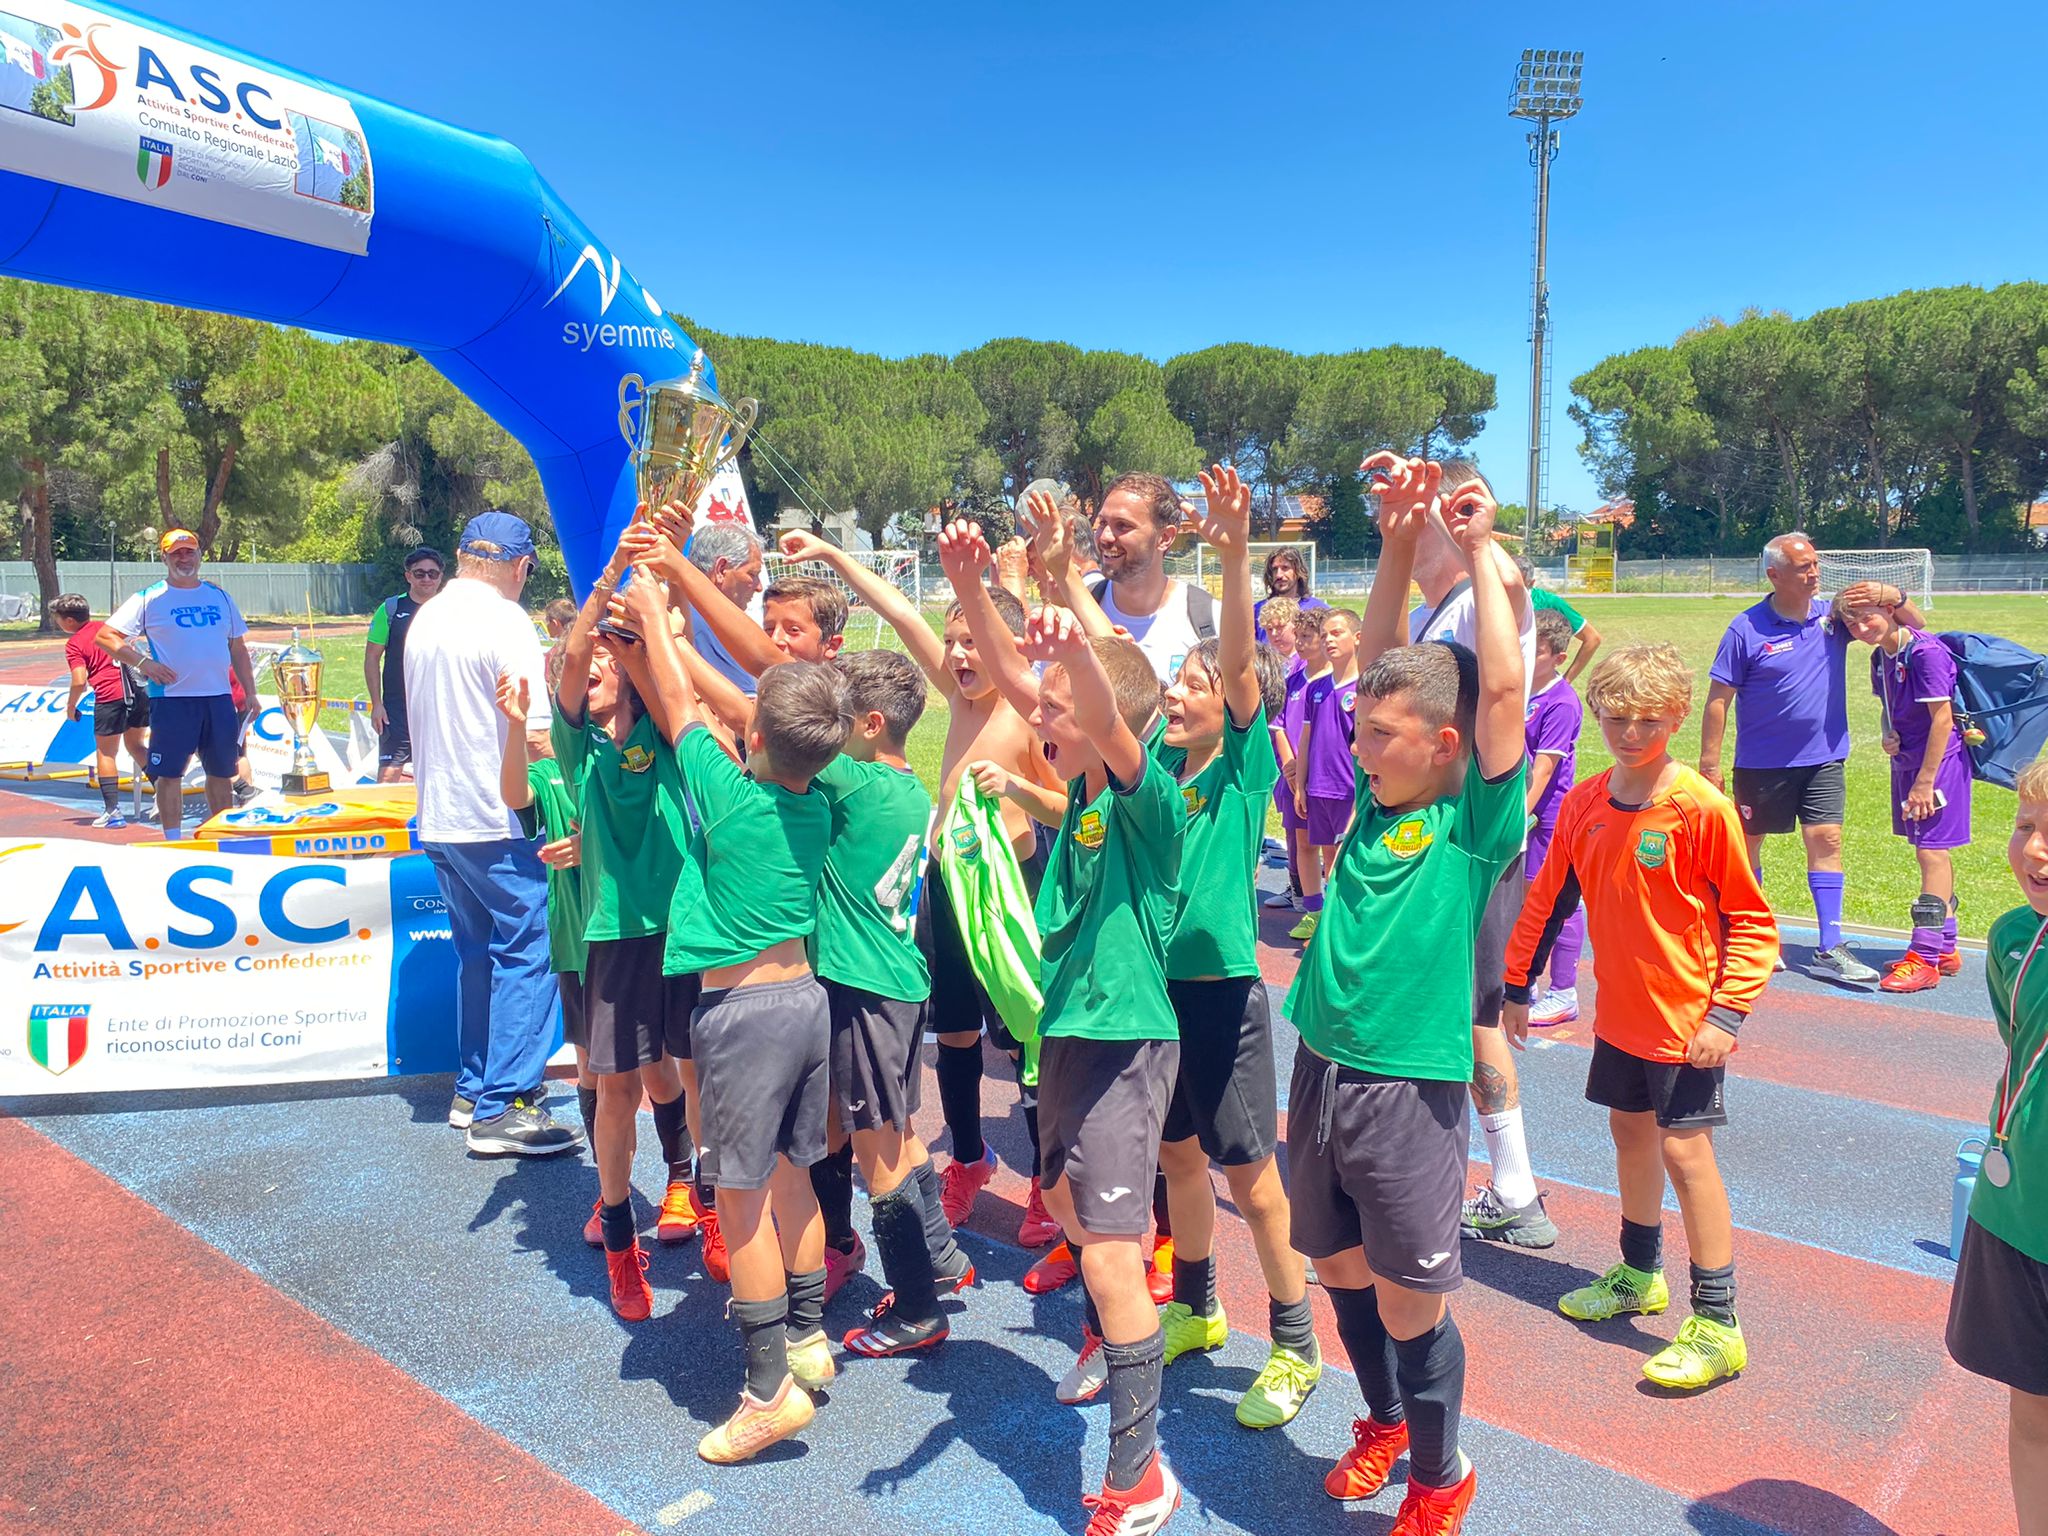 ULN Consalvo | La Scuola calcio “spopola” al torneo di Francavilla: tre vittorie e due secondi posti